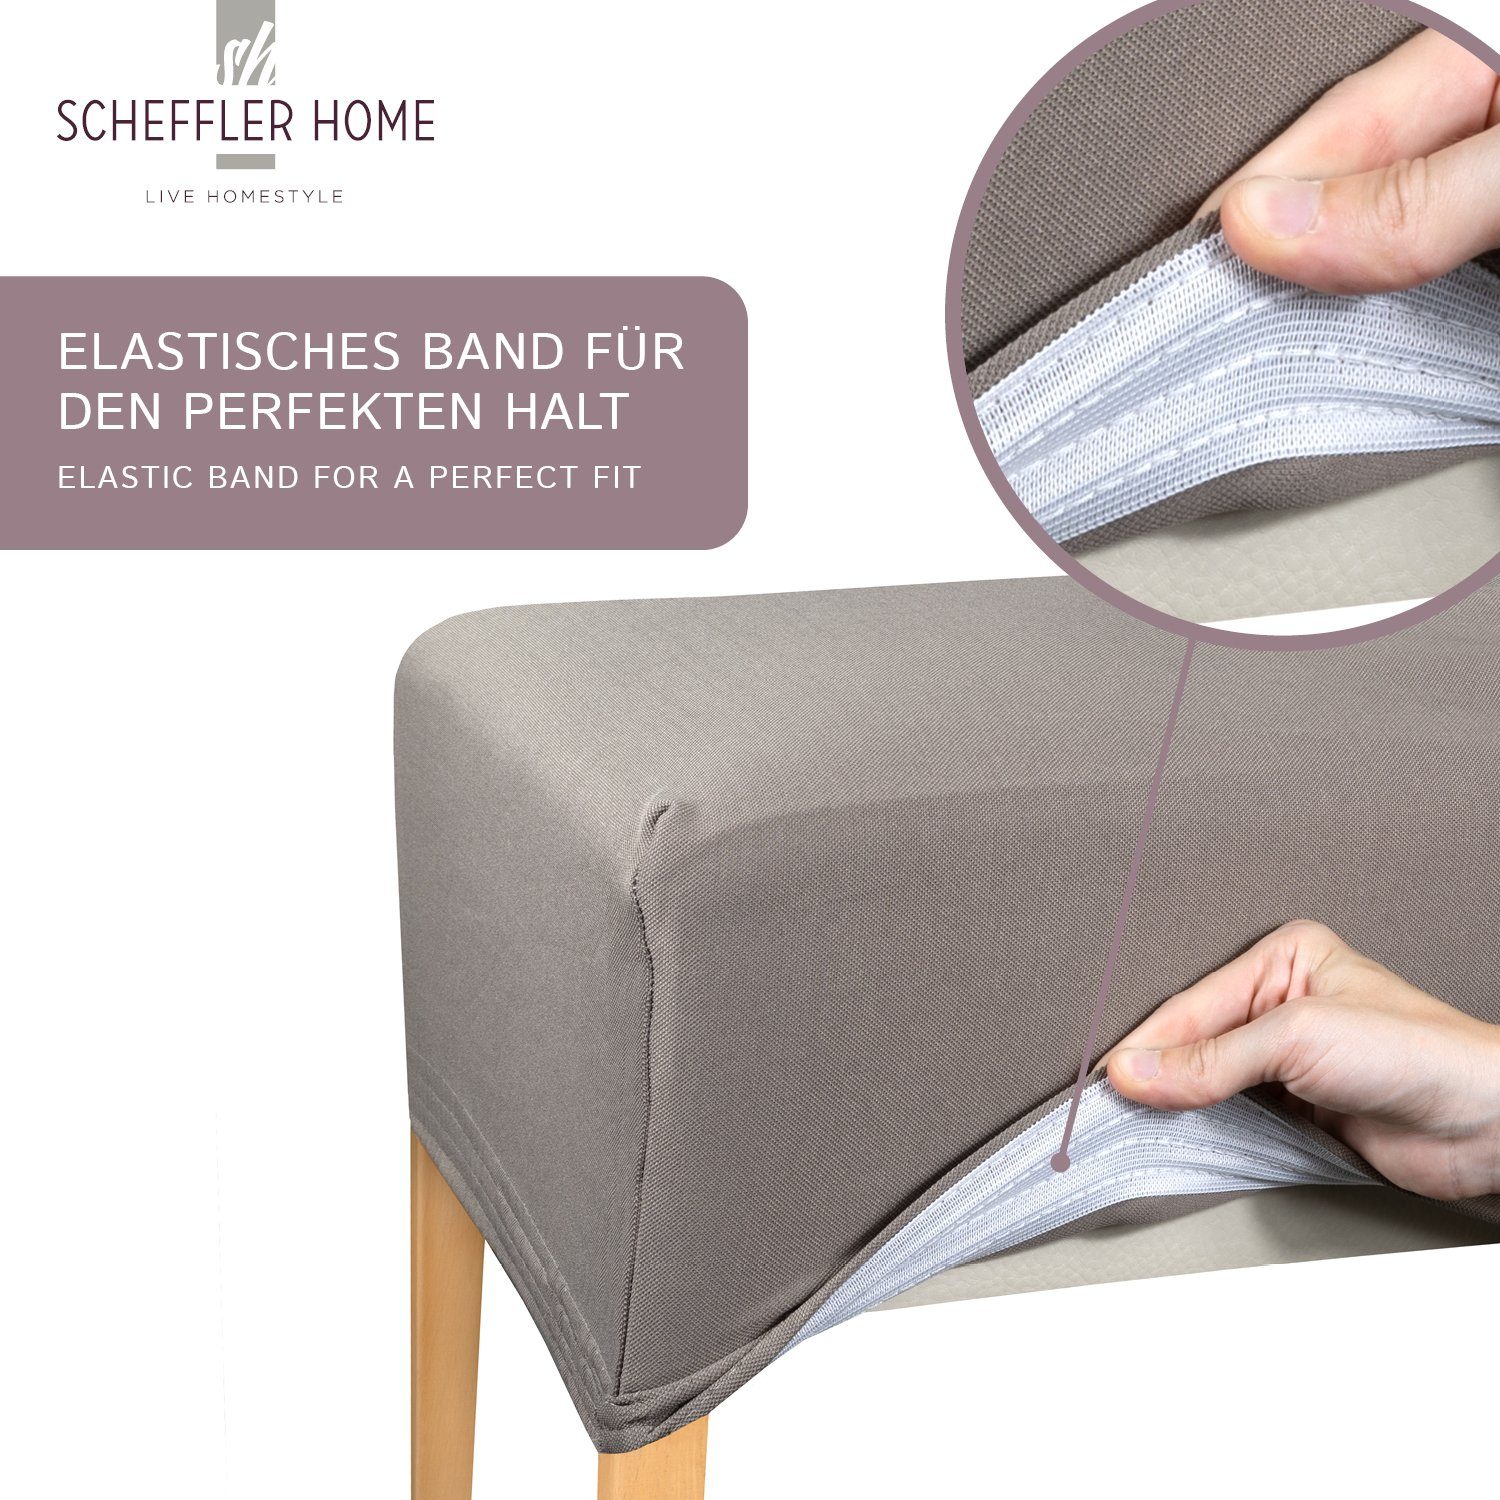 und sh Lotus Fleckenschutz HOMESTYLE SCHEFFLER-HOME Marie Grau Sitzbezug LIVE elastisch mit Stuhlbezug Effekt,